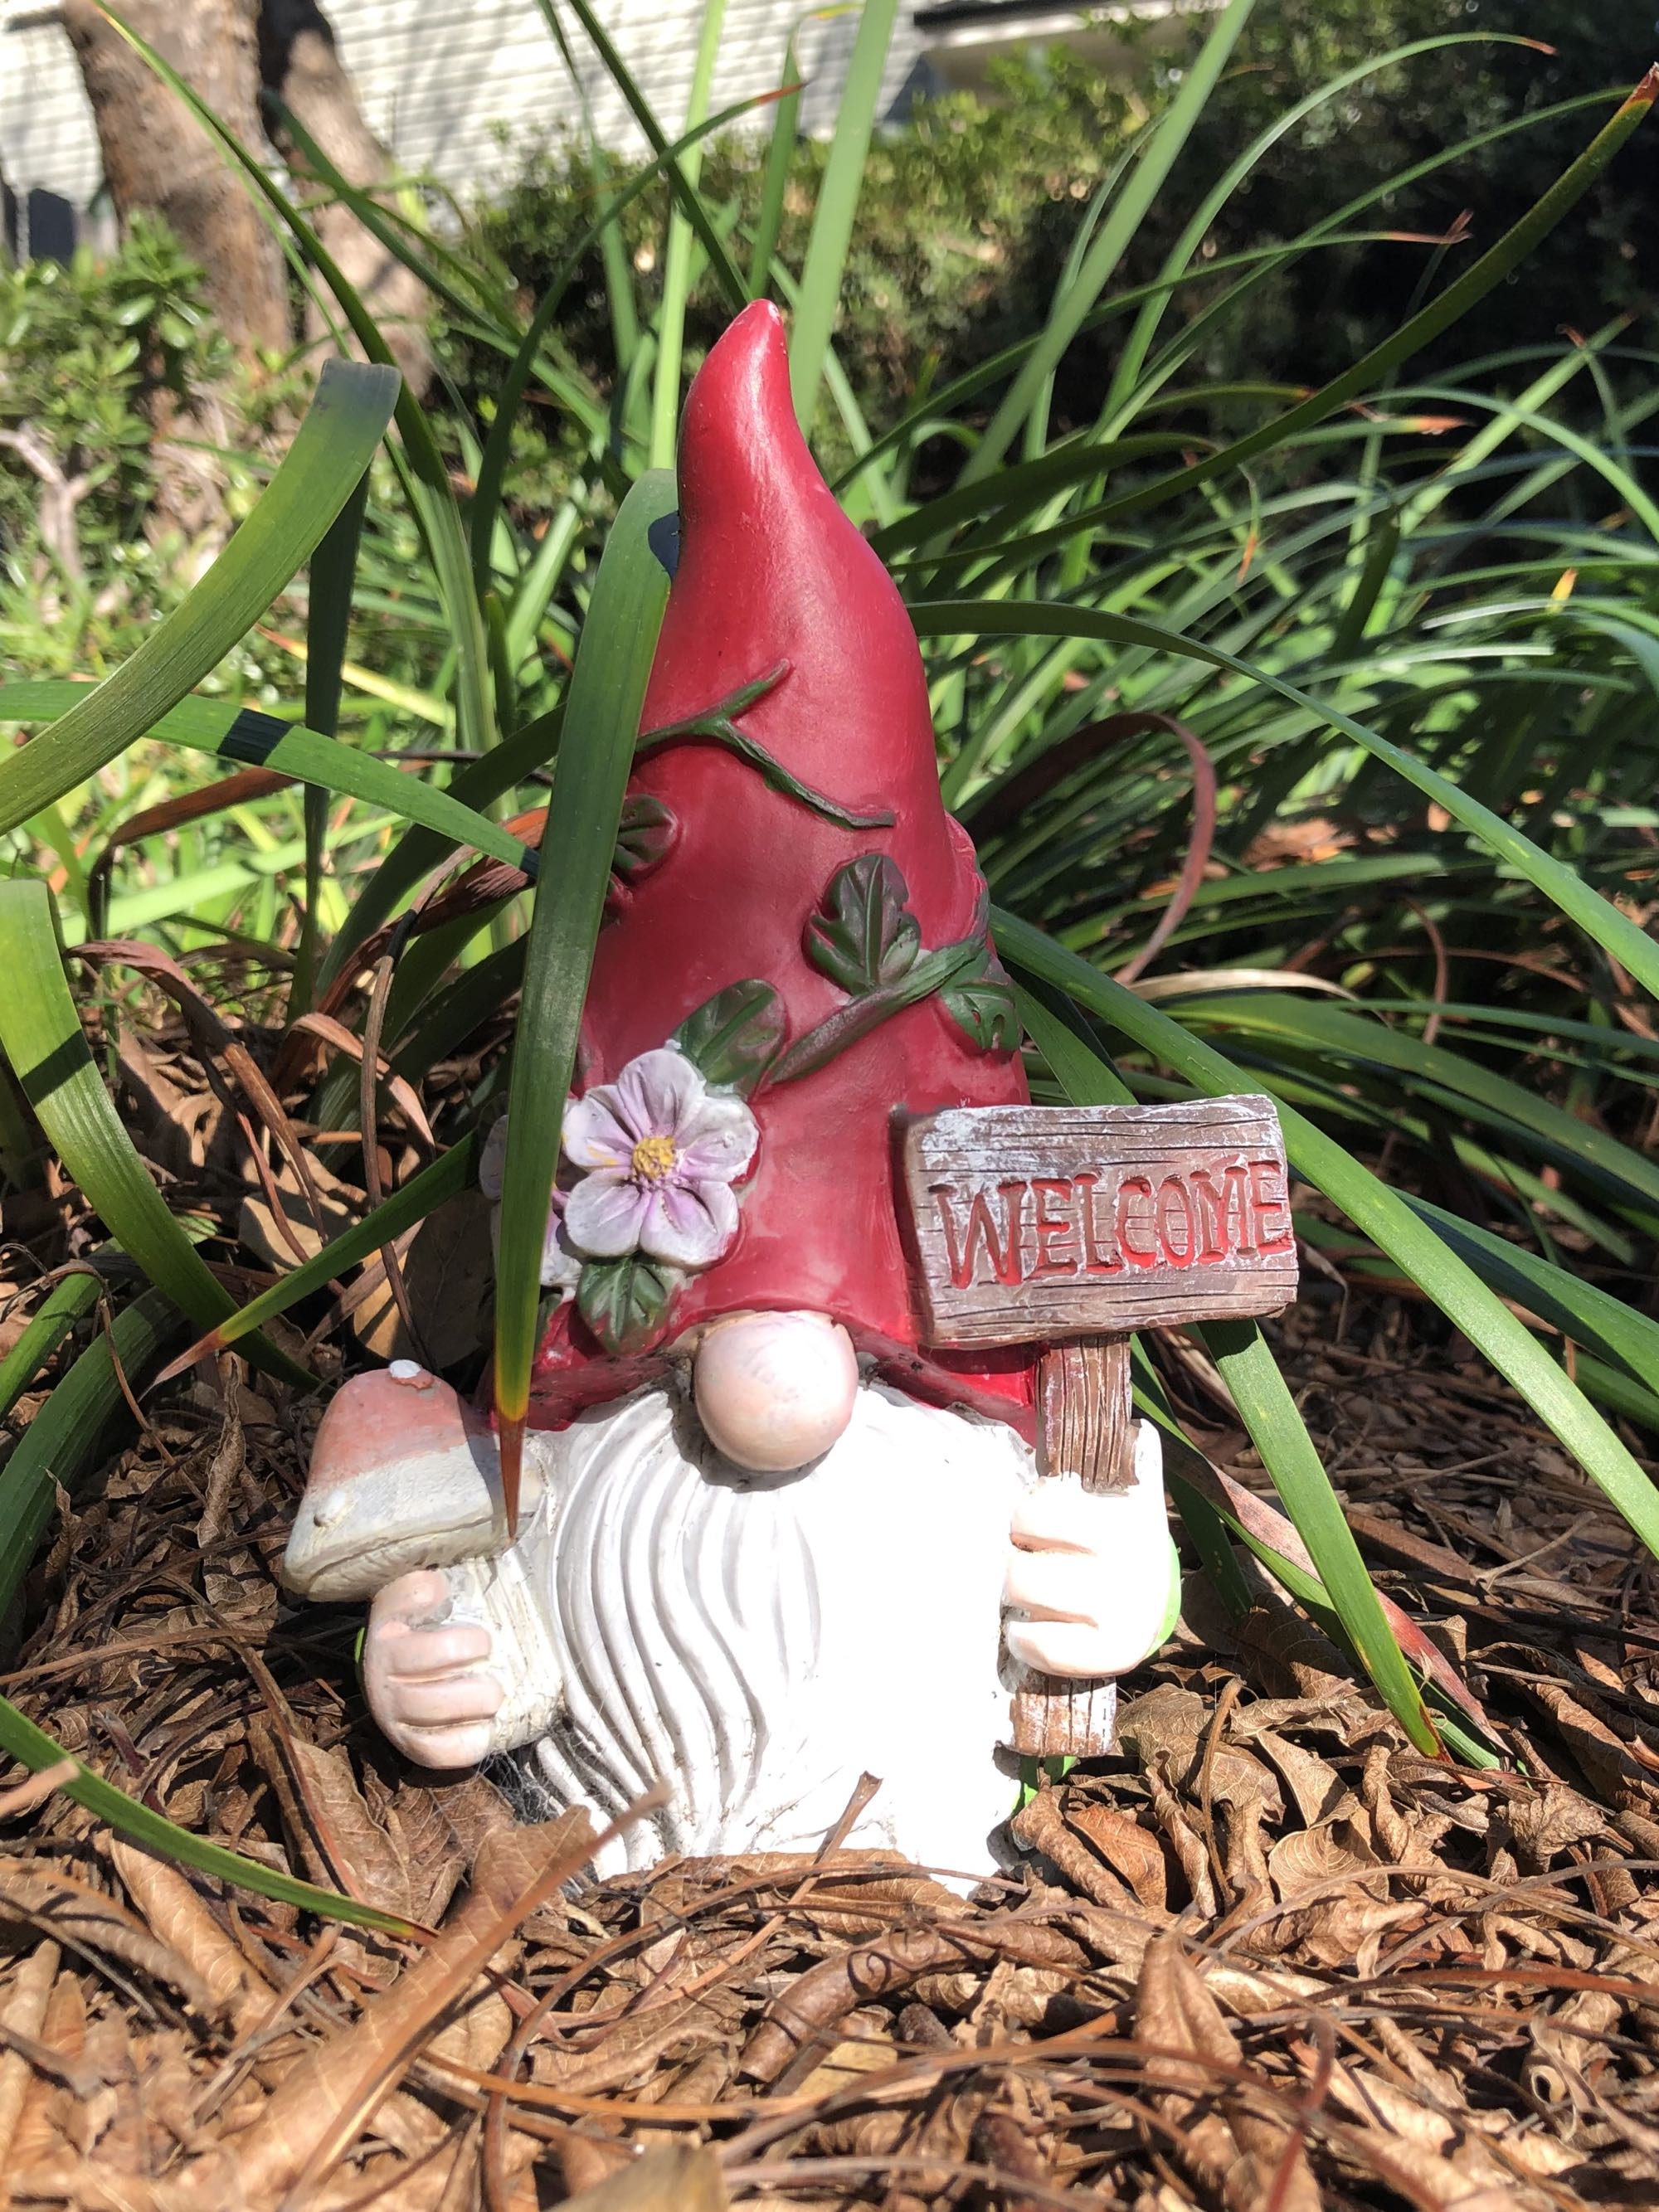 Michael Green's garden gnome